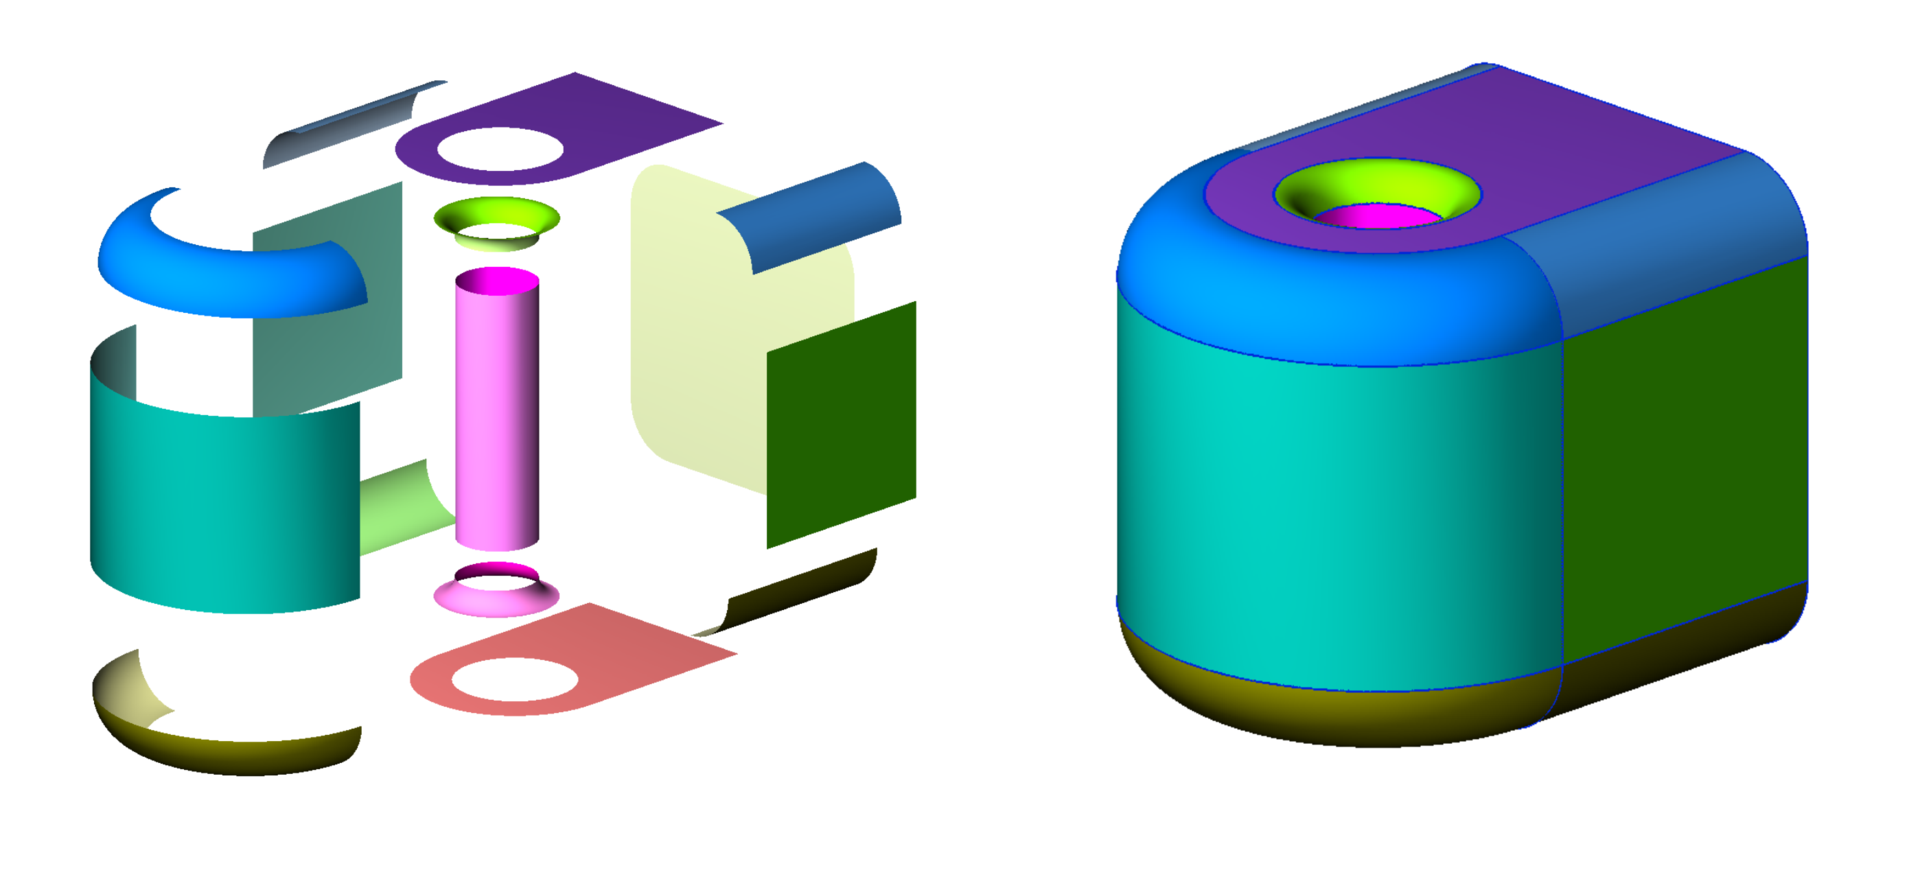 Как математическая библиотека КОМПАС-3D превратилась в C3D Toolkit для разработчиков САПР → часть 1 - 6